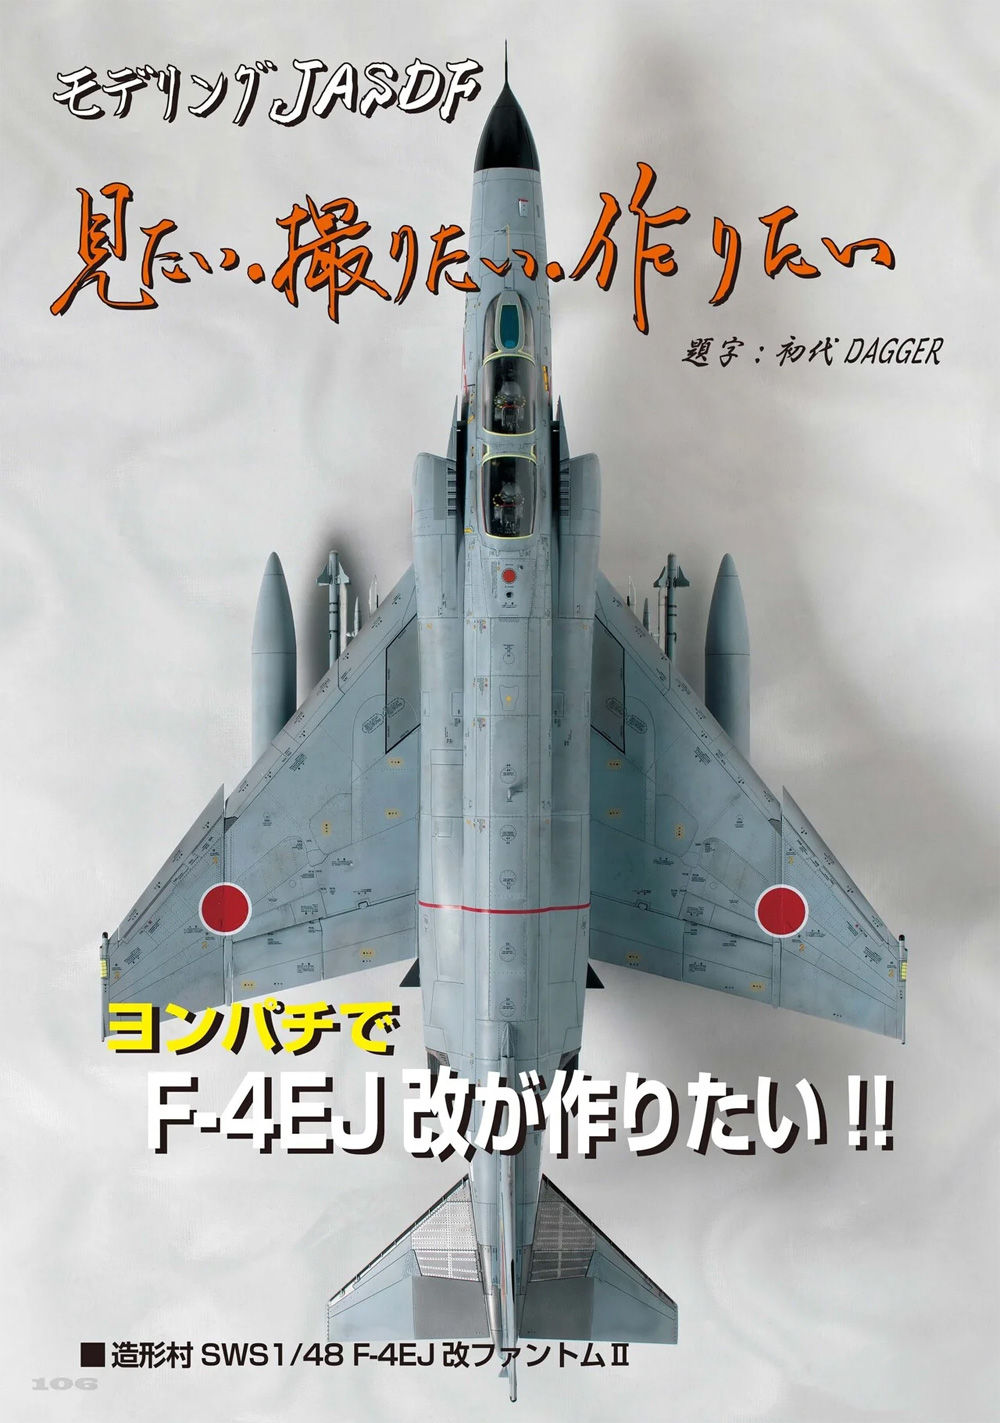 飛行機模型スペシャル 34 日本海軍夜間戦闘機 / 世界最高傑作輸送機 C-130 ハーキュリーズ 本 (モデルアート 飛行機模型スペシャル No.034) 商品画像_4